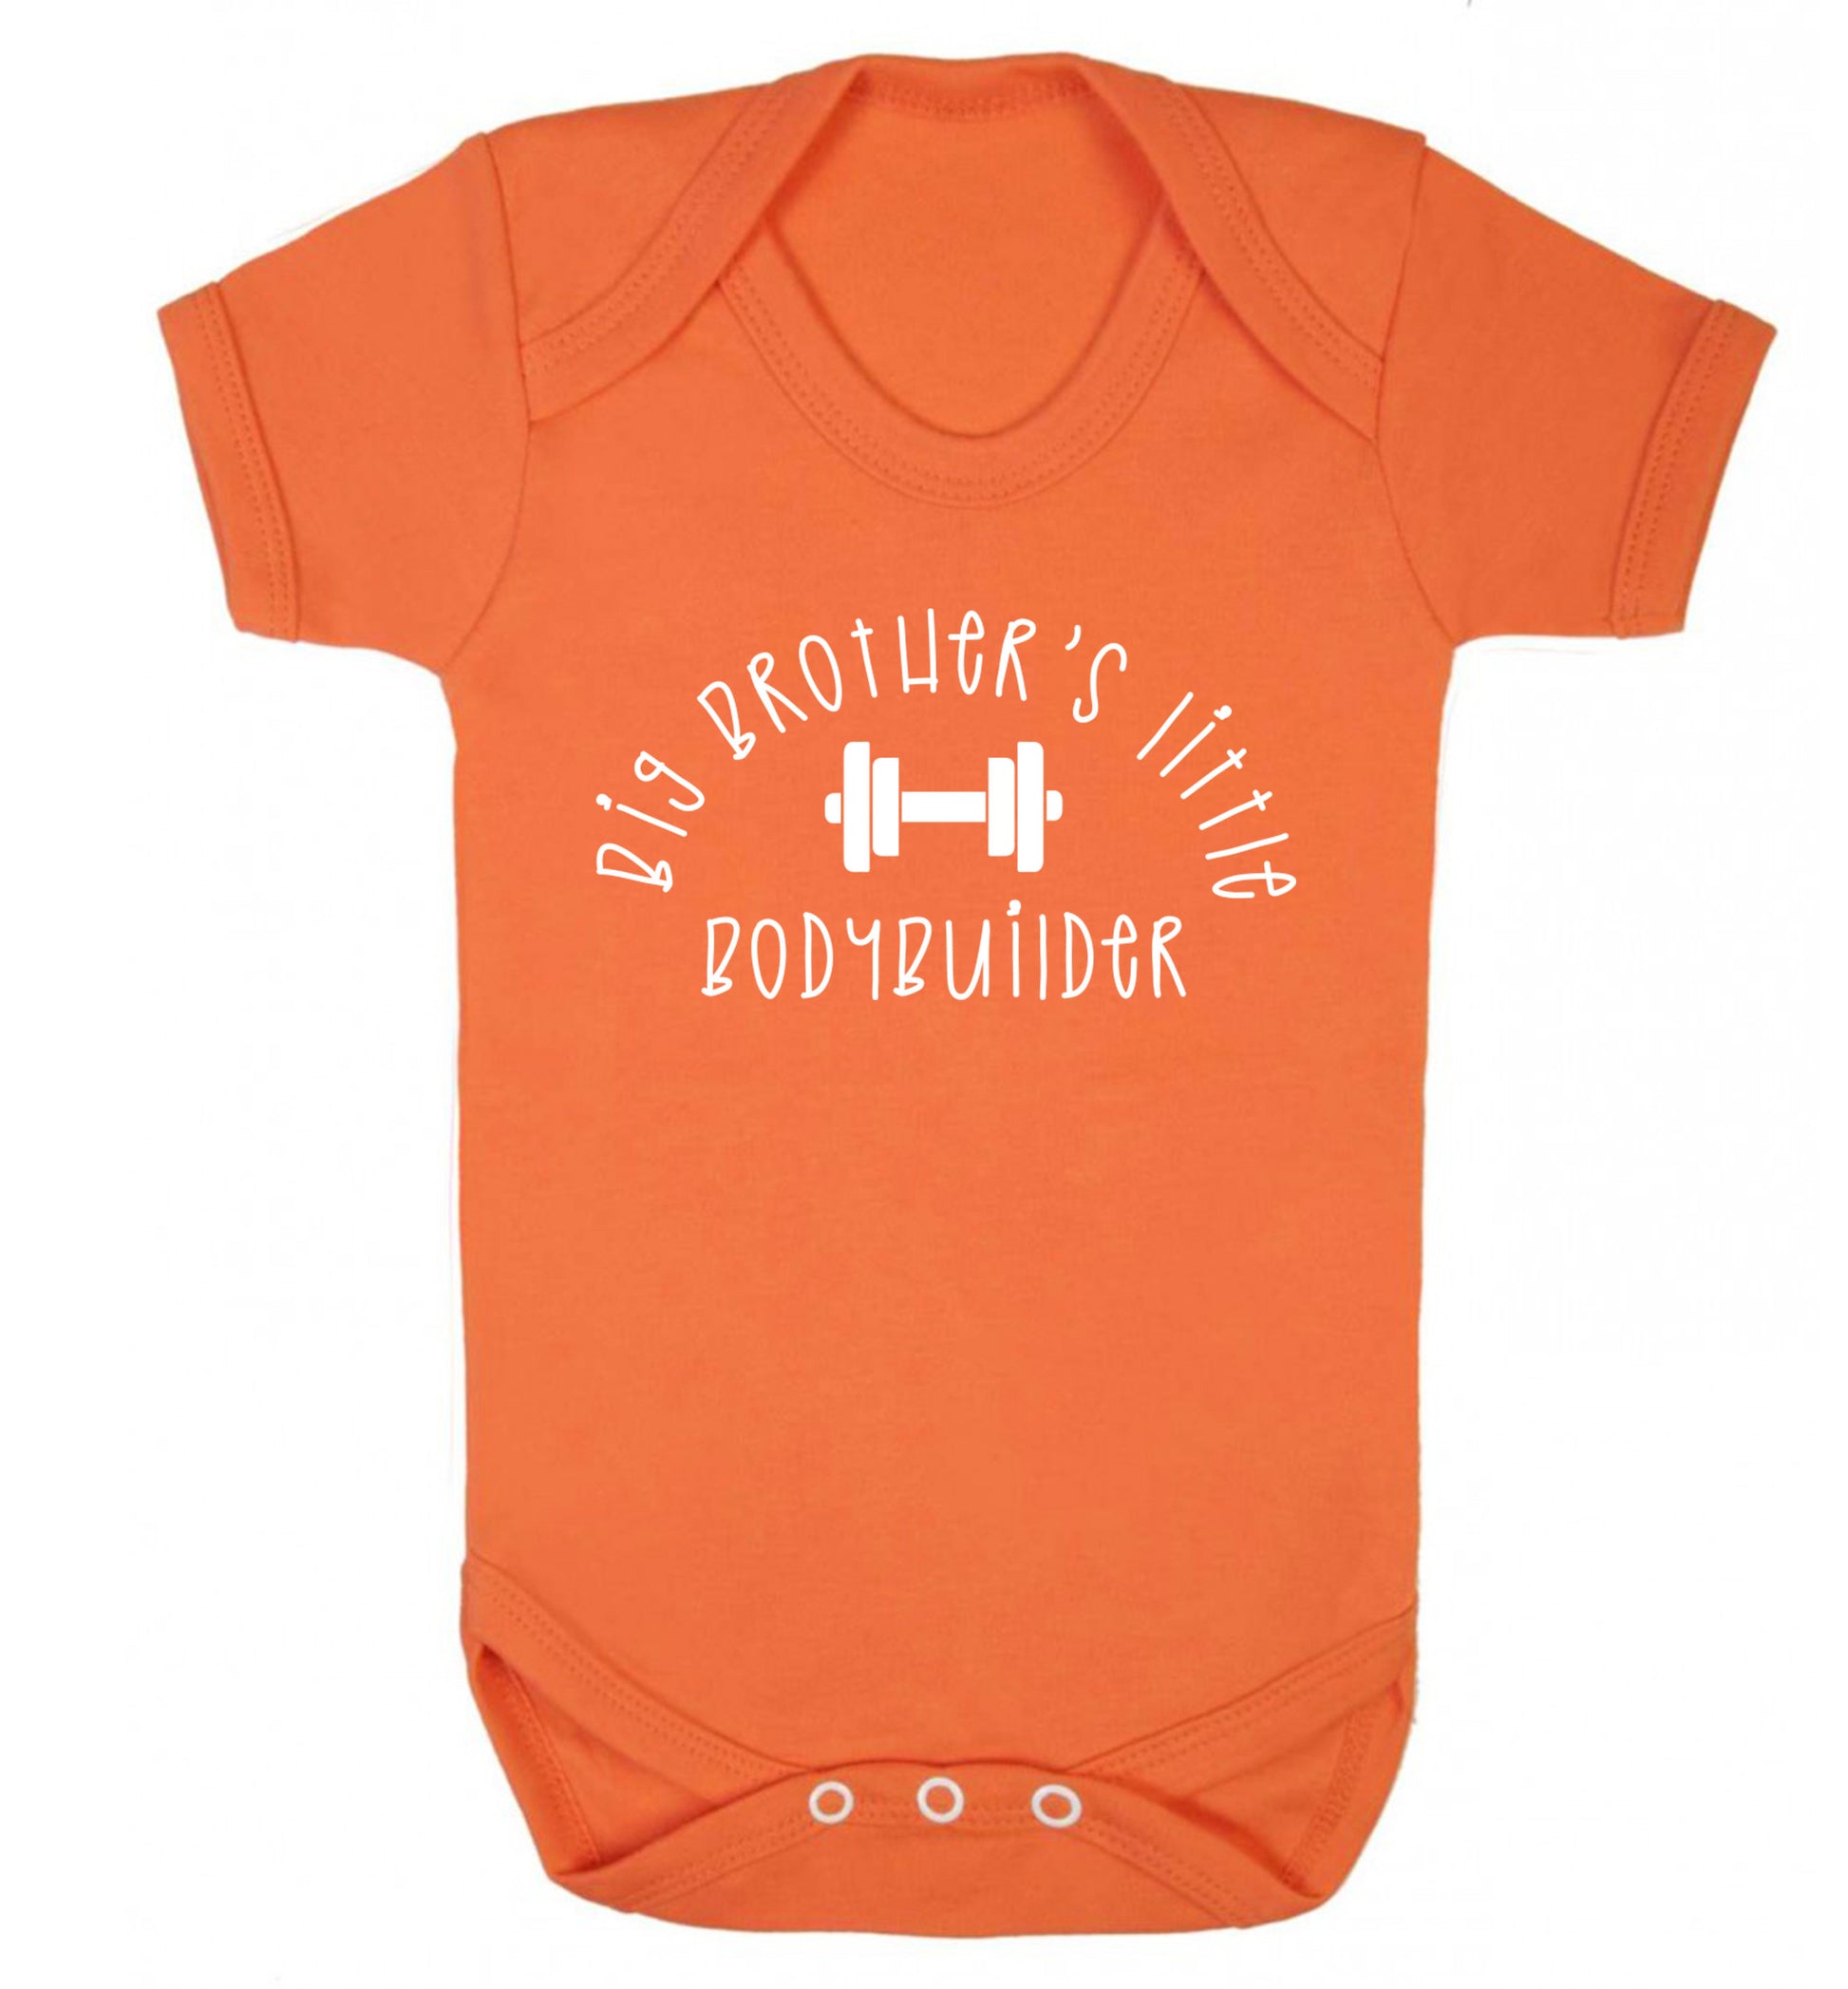 Big brother's little bodybuilder Baby Vest orange 18-24 months